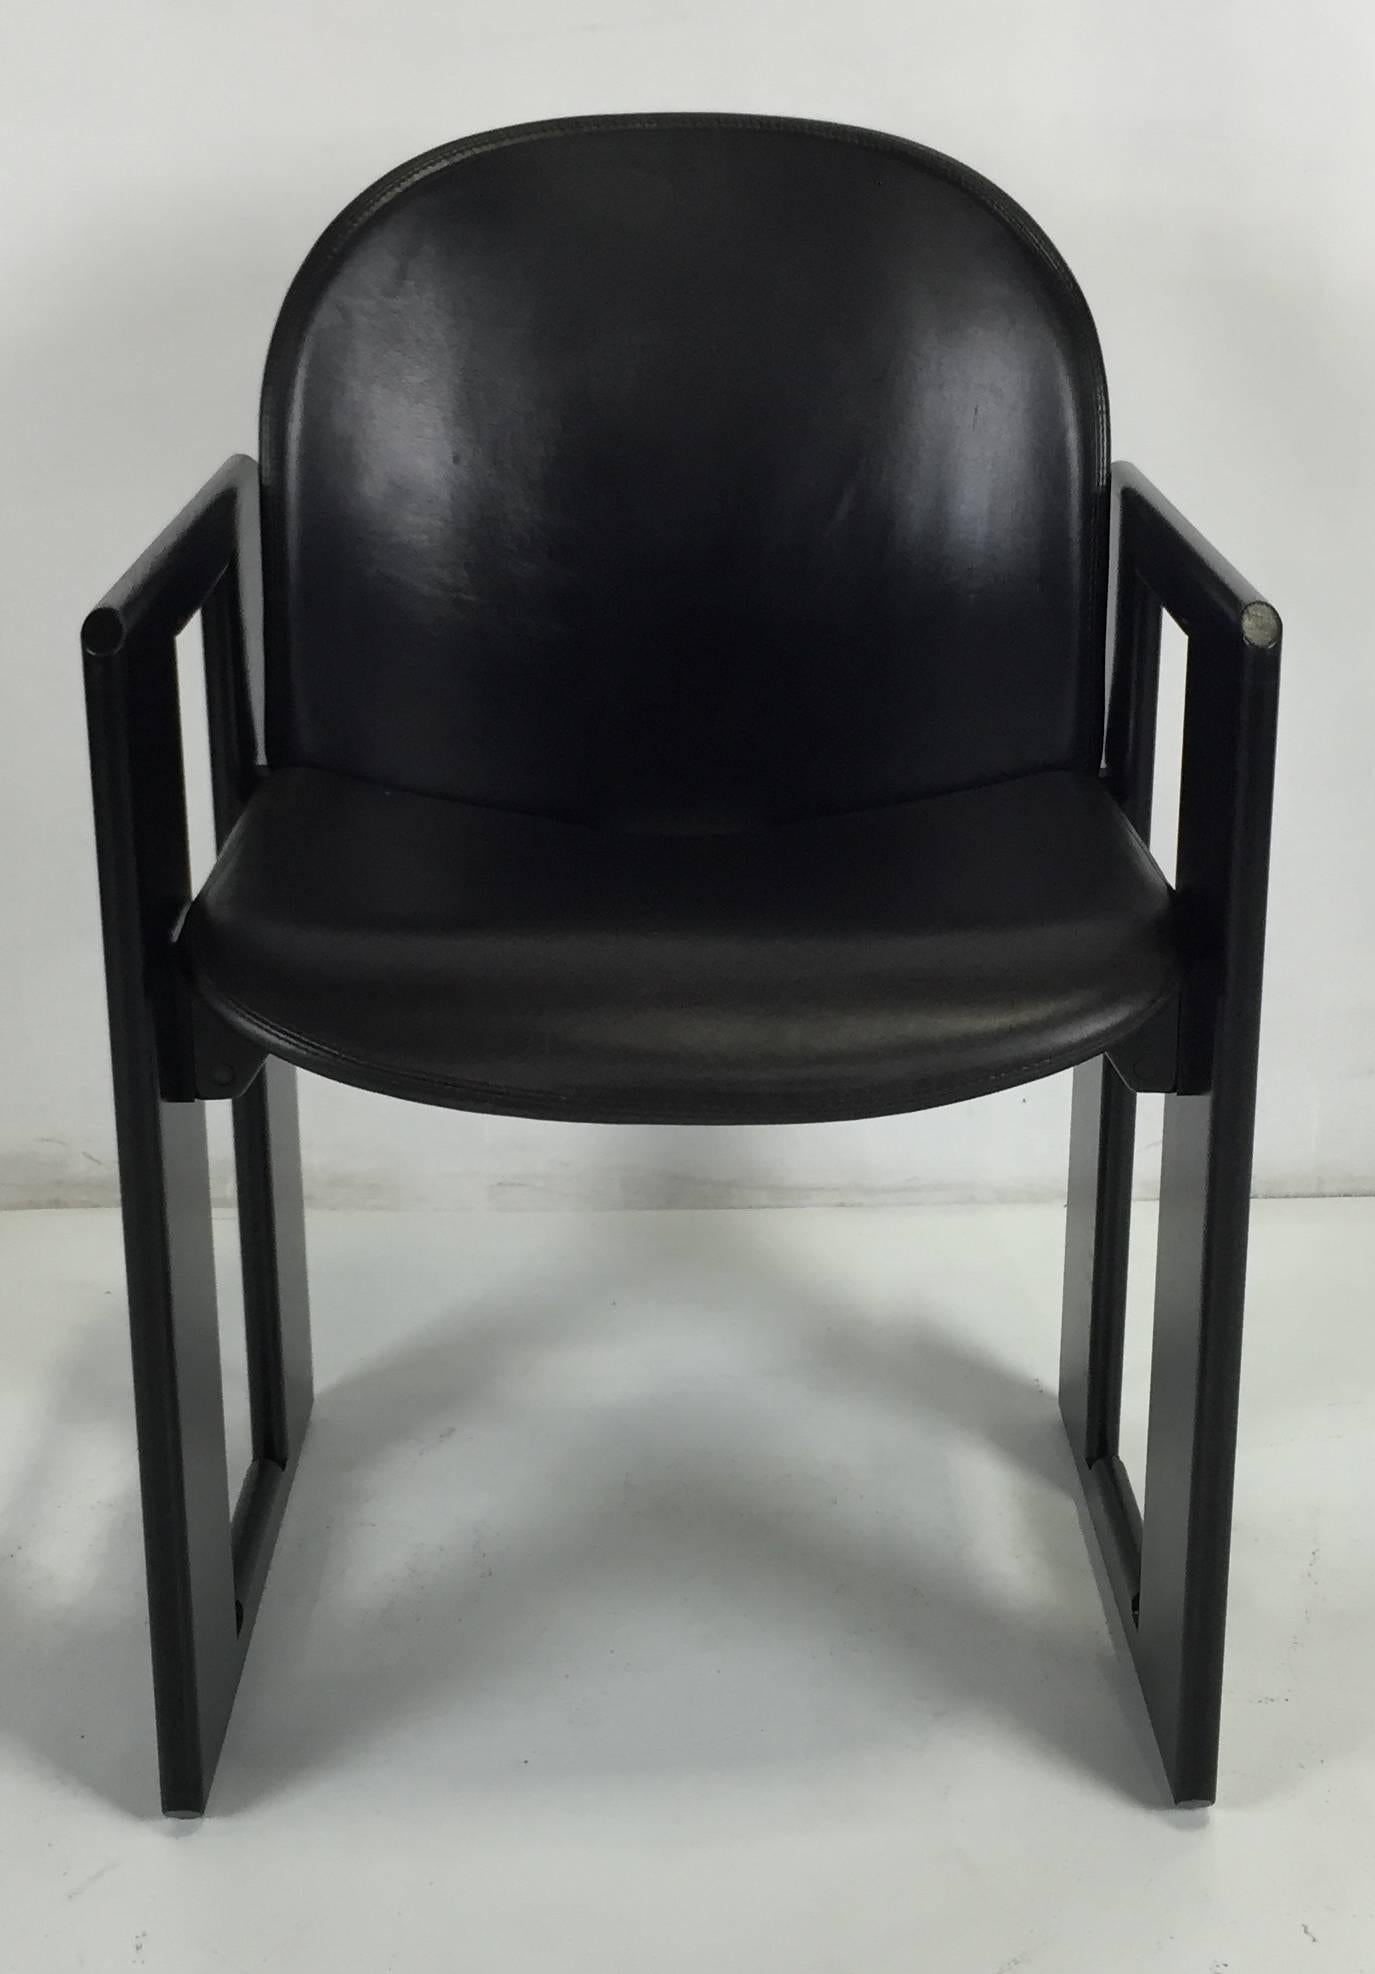 Esszimmerstühle Dialogo aus Leder von Tobia Scarpa für B&B Italia. Die Rahmen wurden frisch lackiert und die Ledersitze sind in einem fantastischen Originalzustand.  Diese einzigartigen und schönen Stühle waren von Anfang an dazu bestimmt, Klassiker